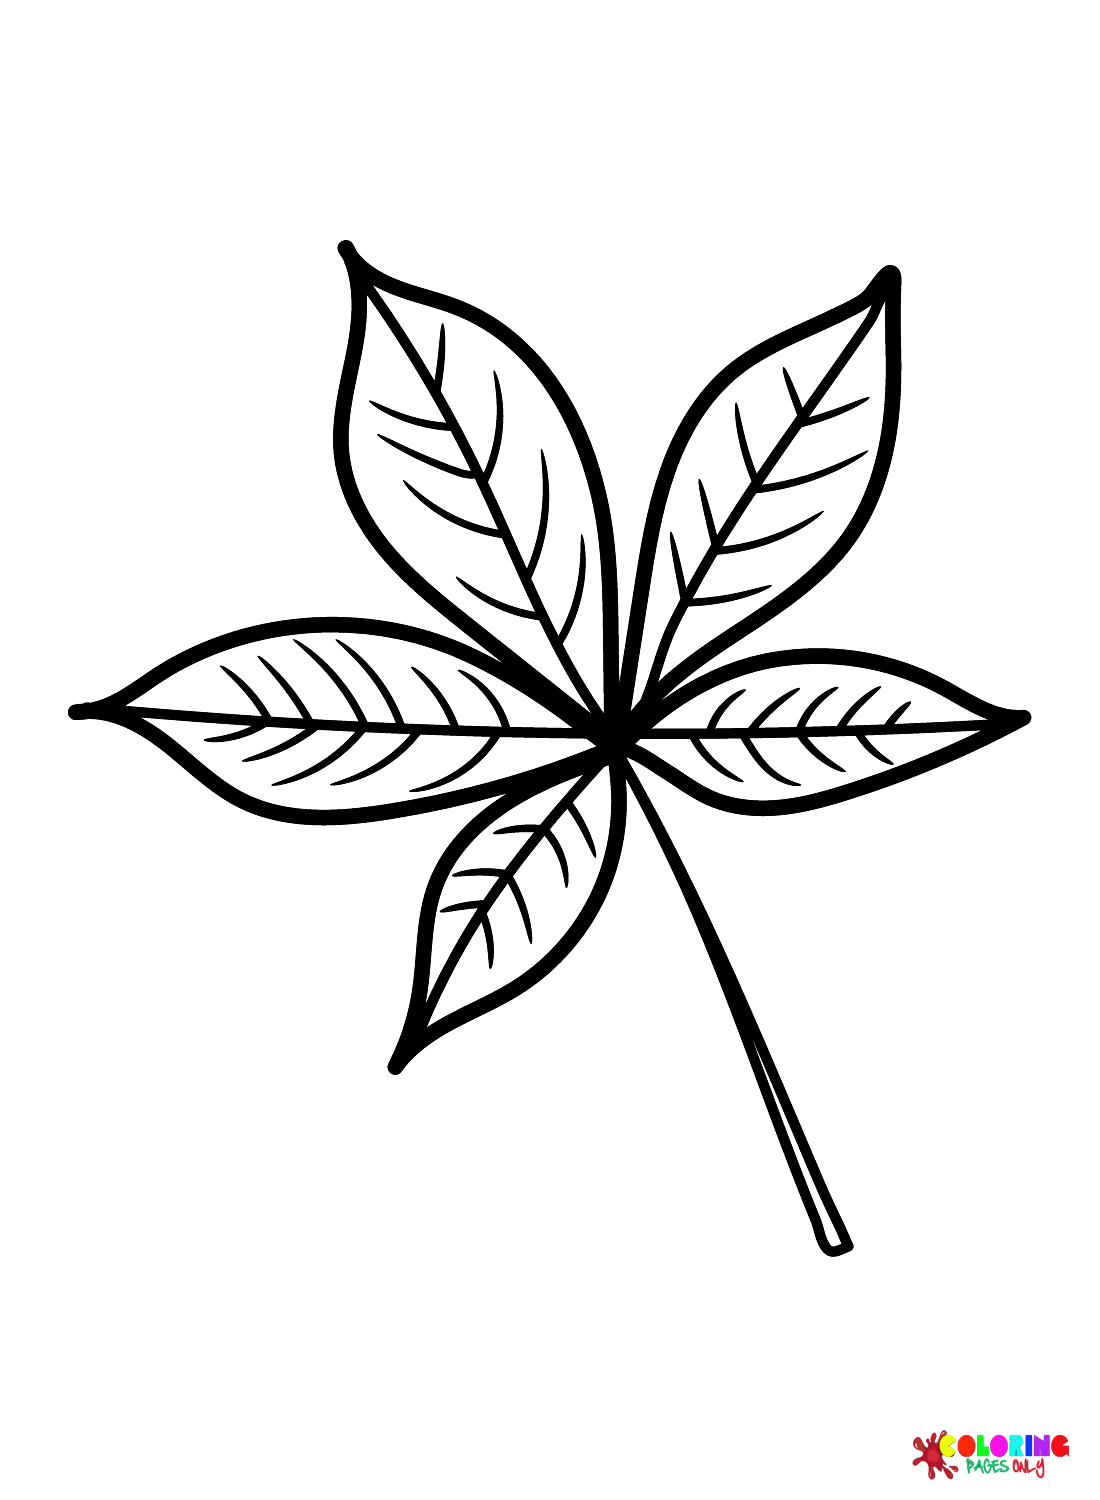 Buckeye Leaf from Leaves